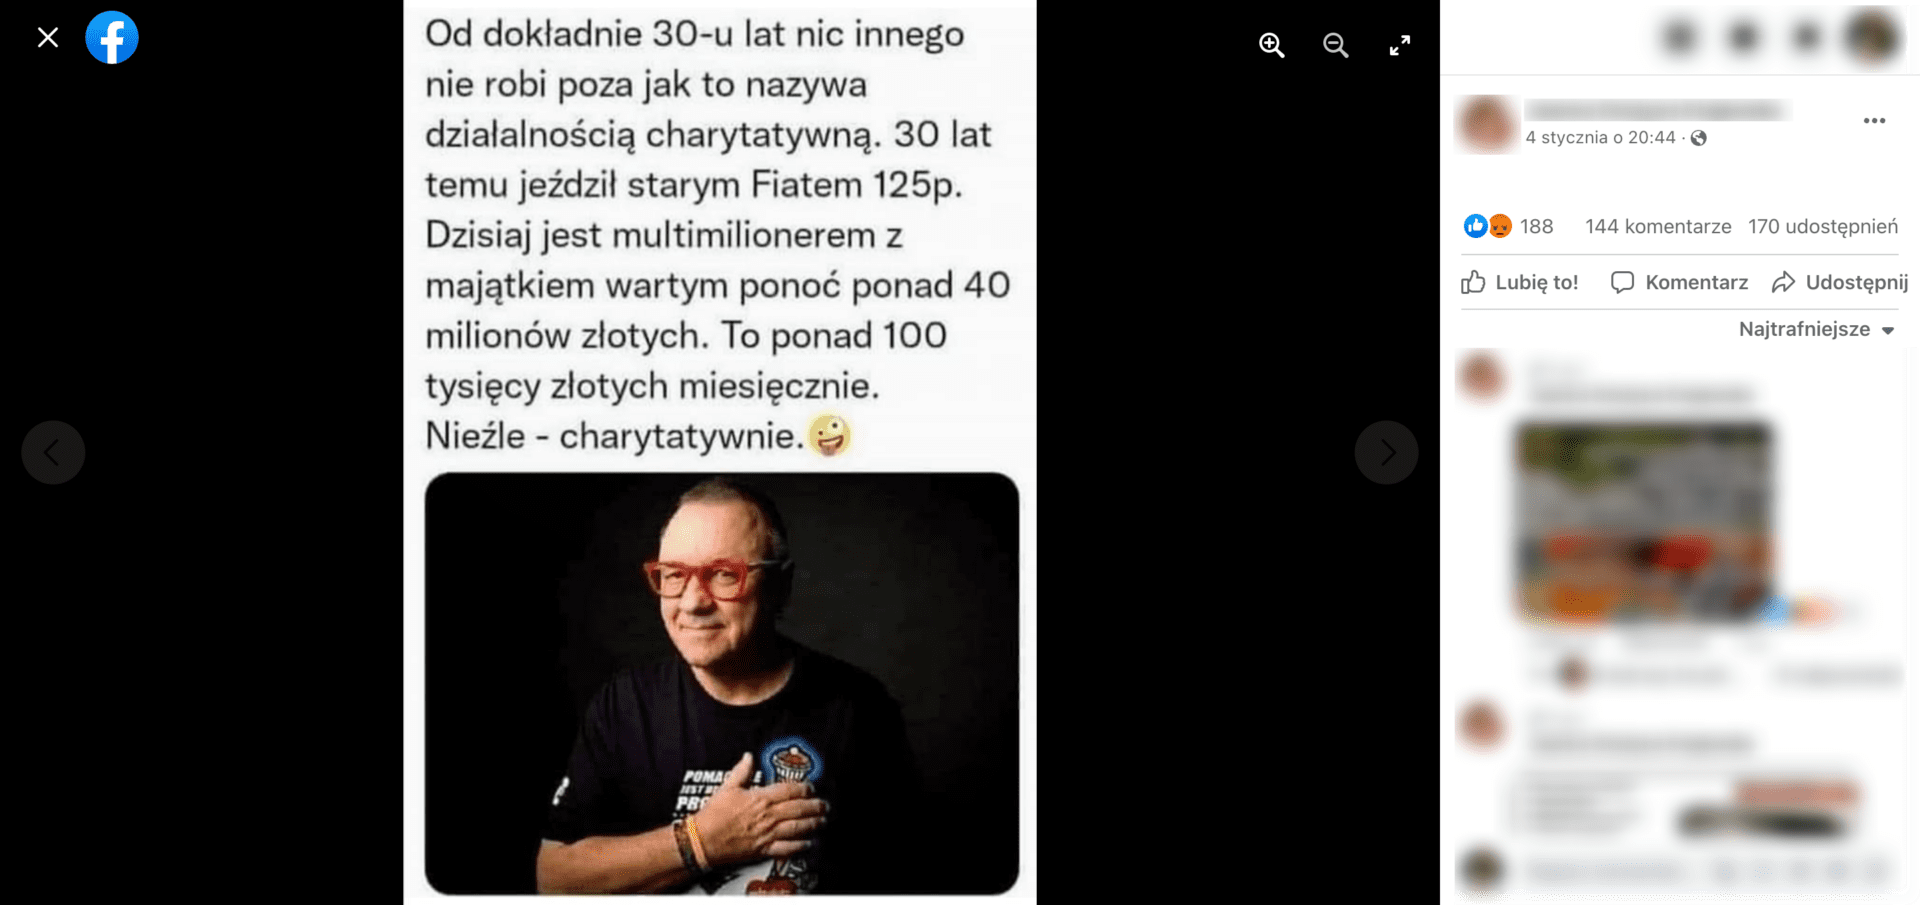 Zrzut ekranu posta na Facebooku, w którym podano informację o rzekomych zarobkach Owsiaka. Widoczny jest Jerzy Owsiak w czarnej koszulce i charakterystycznych okularach z czerwonymi oprawkami. Wpis zdobył ponad 180 reakcji, ponad 140 komentarzy i 170 udostępnień.